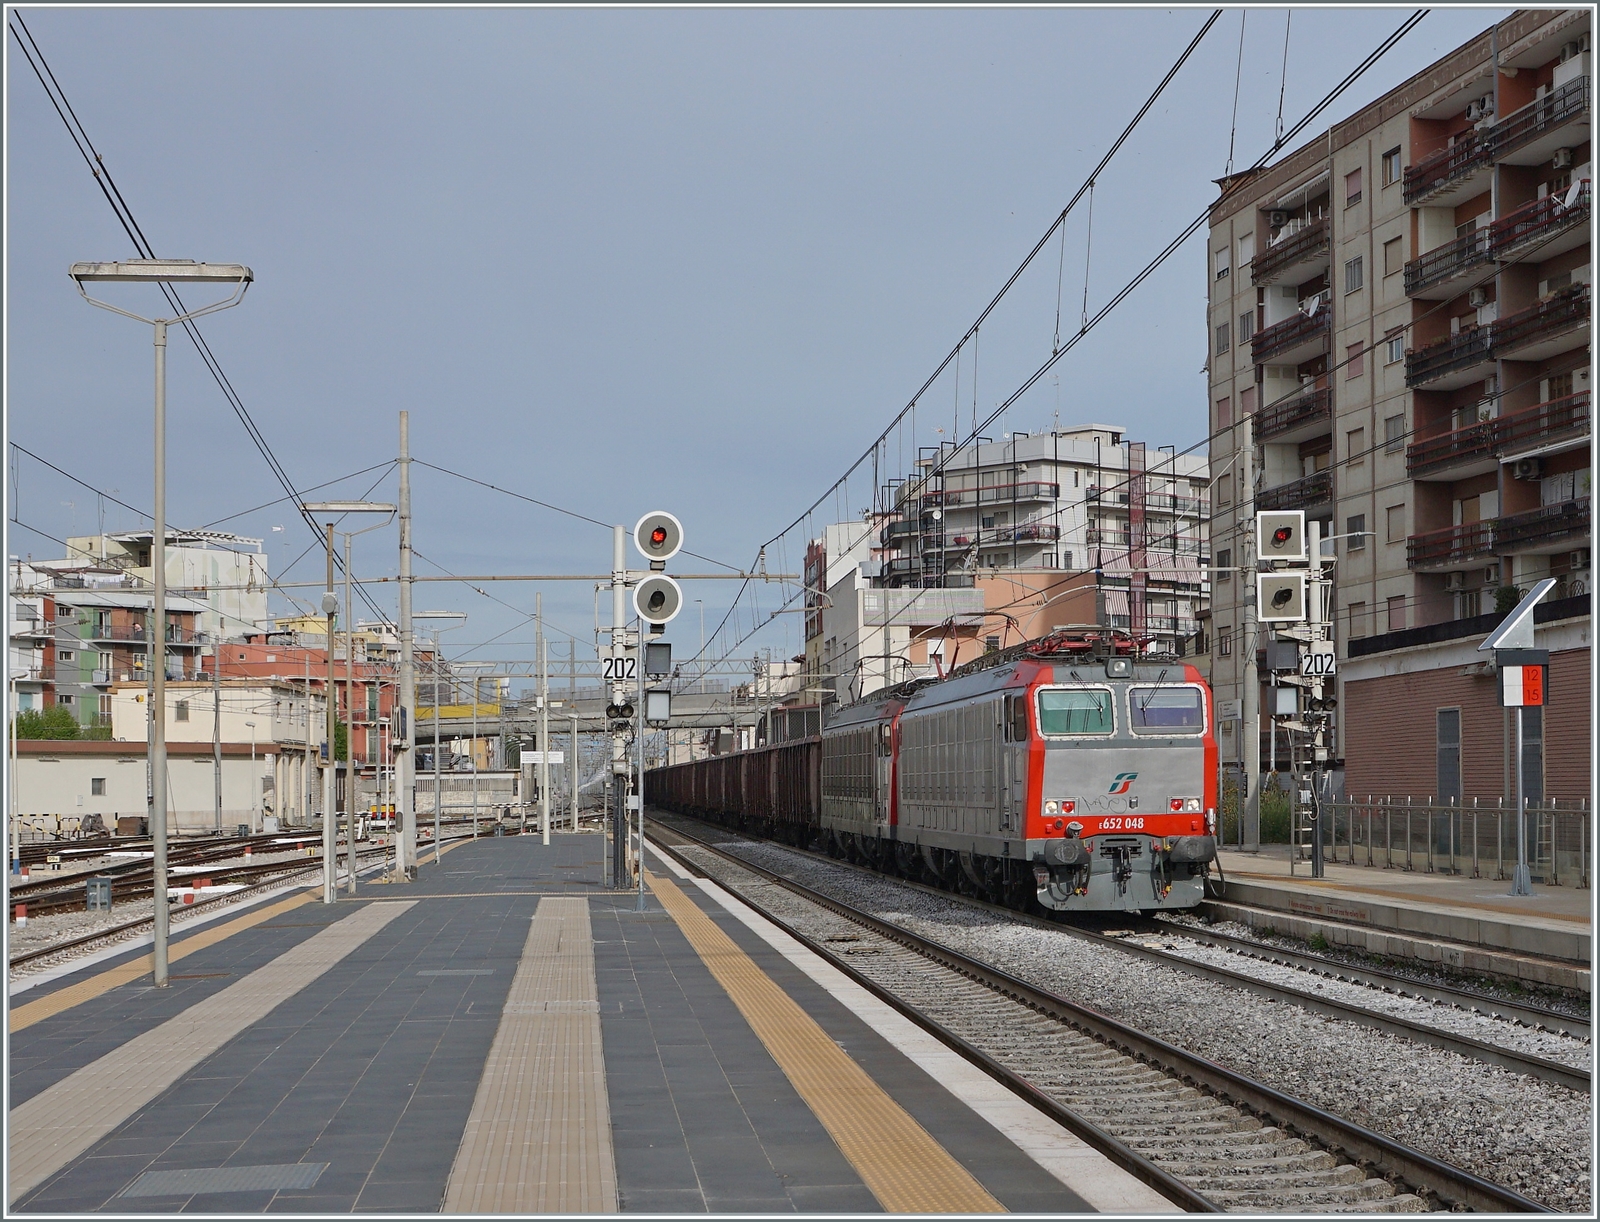 Die FS Mercitalia E 652 048 und eine weitere fahren mit einem Güterzug aus vierachsigen offenen Güterwagen durch den Bahnhof von Barletta in Richtung Süden. 

25. April 2023